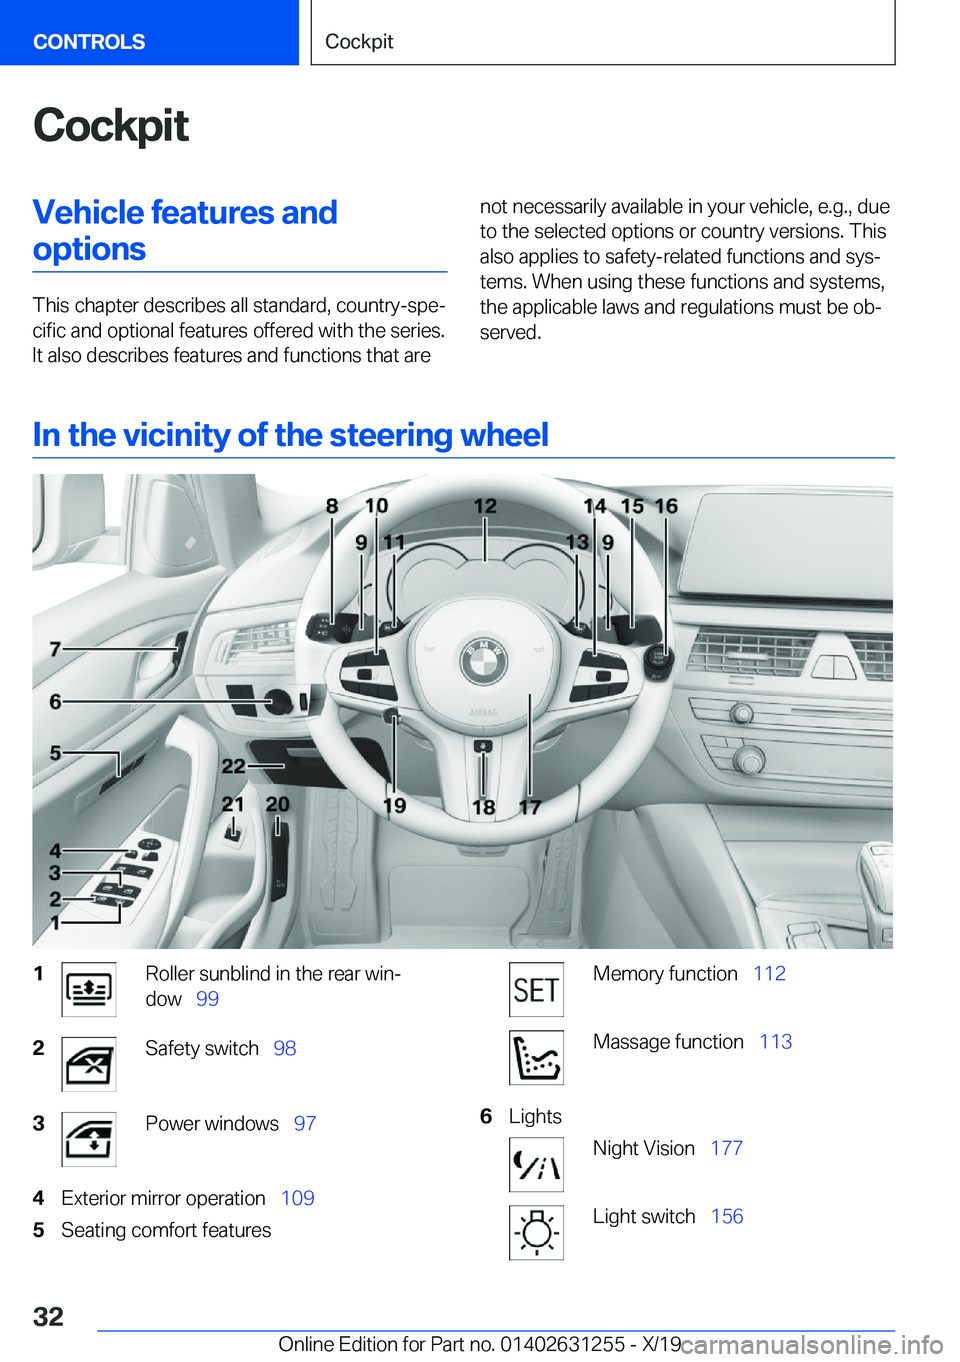 BMW M5 2020 Owners Guide �C�o�c�k�p�i�t�V�e�h�i�c�l�e��f�e�a�t�u�r�e�s��a�n�d�o�p�t�i�o�n�s
�T�h�i�s��c�h�a�p�t�e�r��d�e�s�c�r�i�b�e�s��a�l�l��s�t�a�n�d�a�r�d�,��c�o�u�n�t�r�y�-�s�p�e#j�c�i�f�i�c��a�n�d��o�p�t�i�o�n�